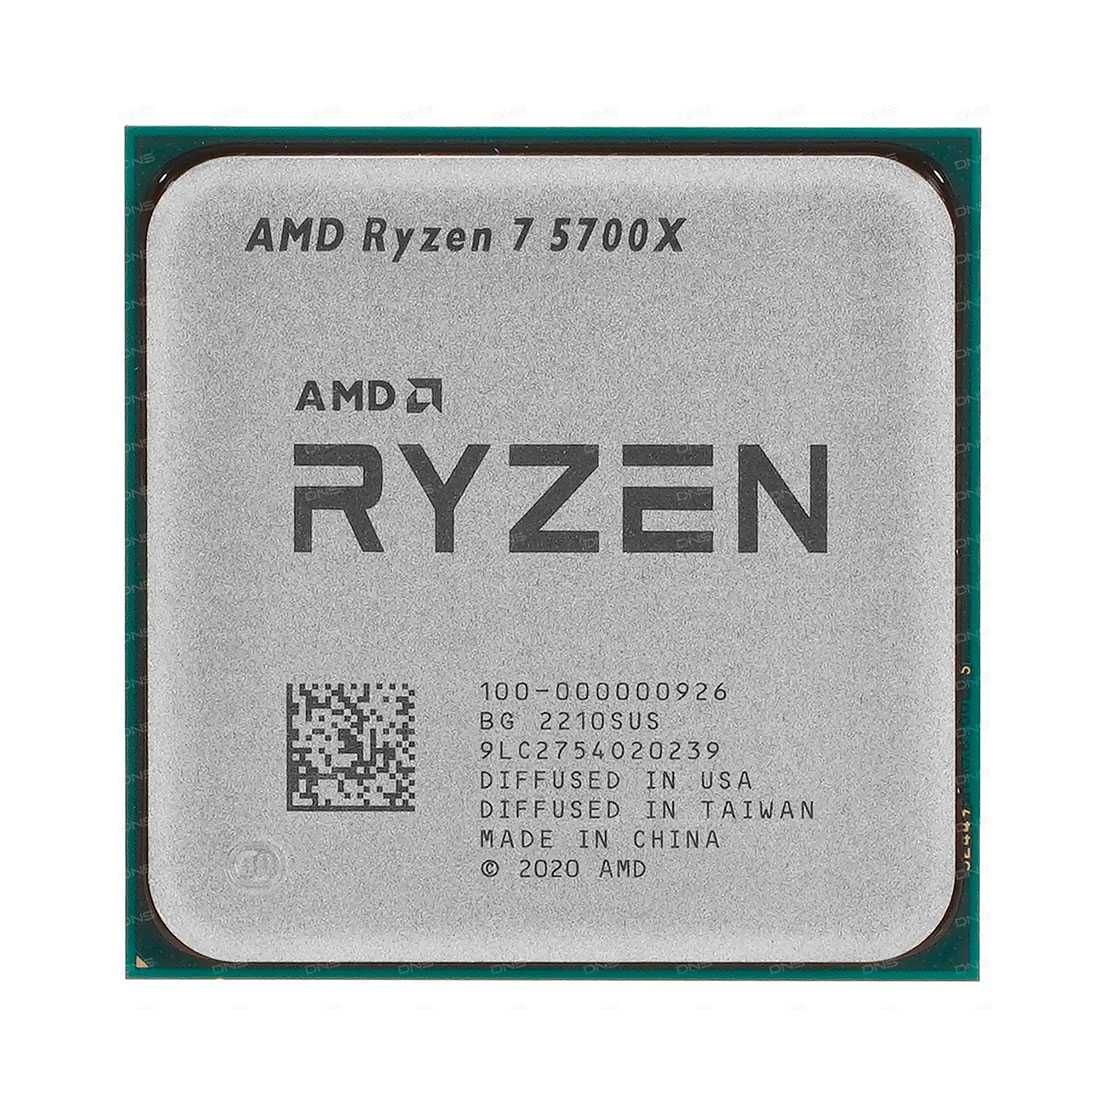 Компьютер, мощный системный блок Ryzen 7 5700X GTX1650 гарантия, новый